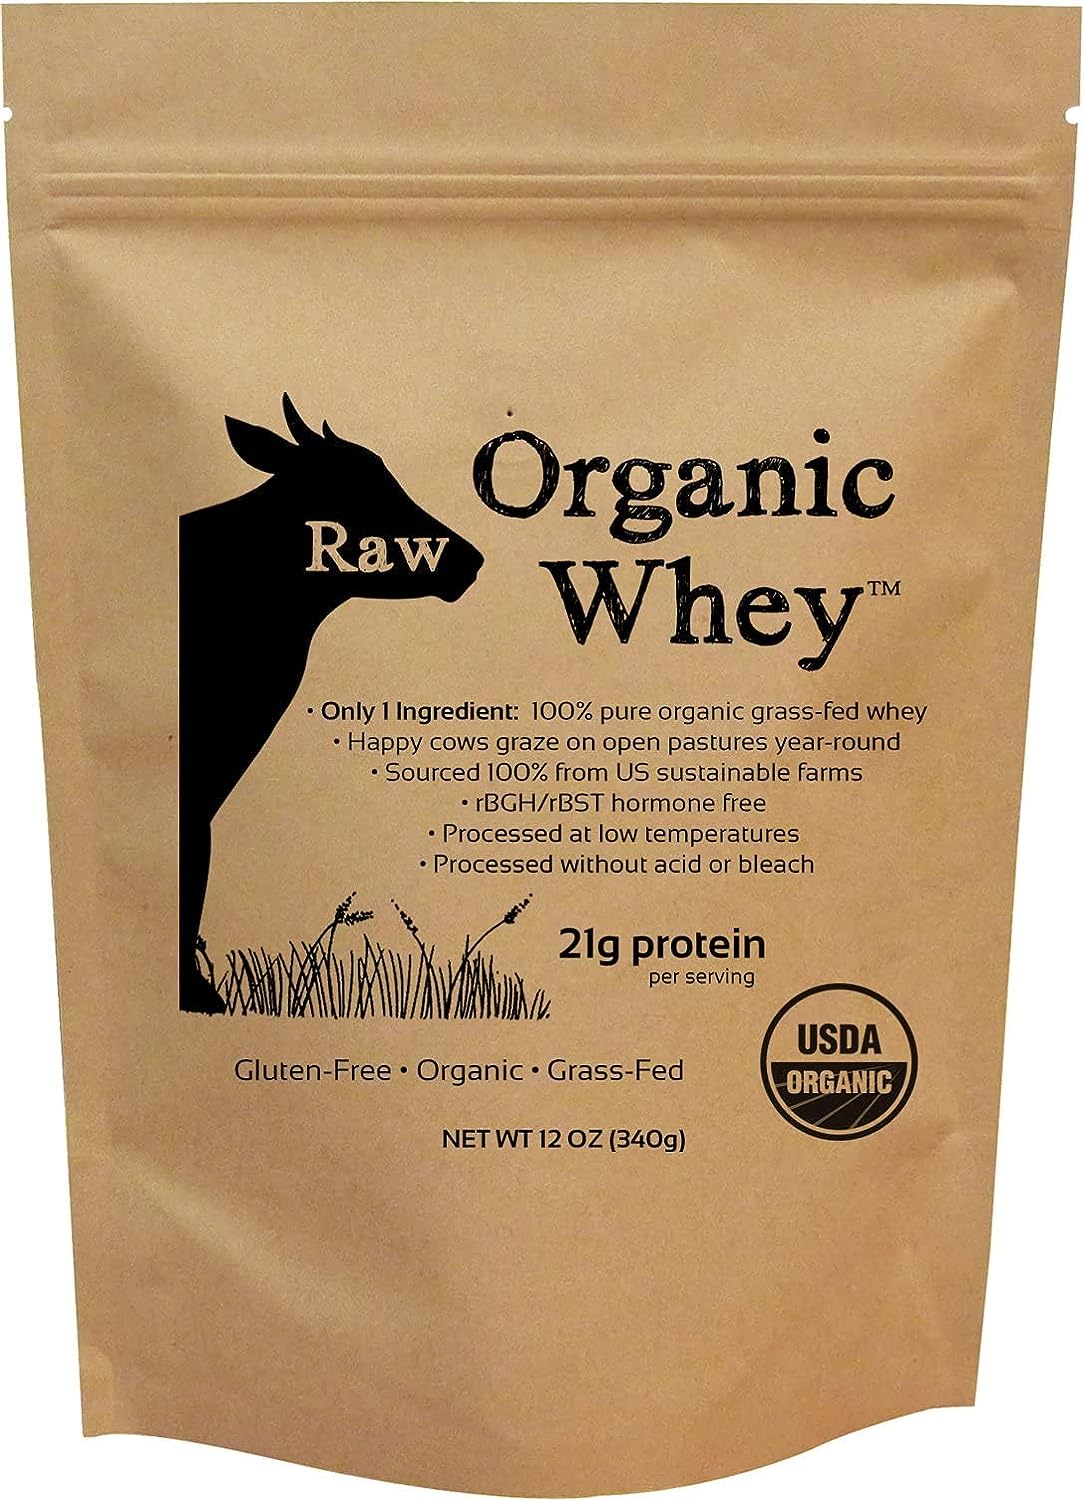 Raw Organic Whey - USDA Certified Organic Whey Protein Powder, Happy H